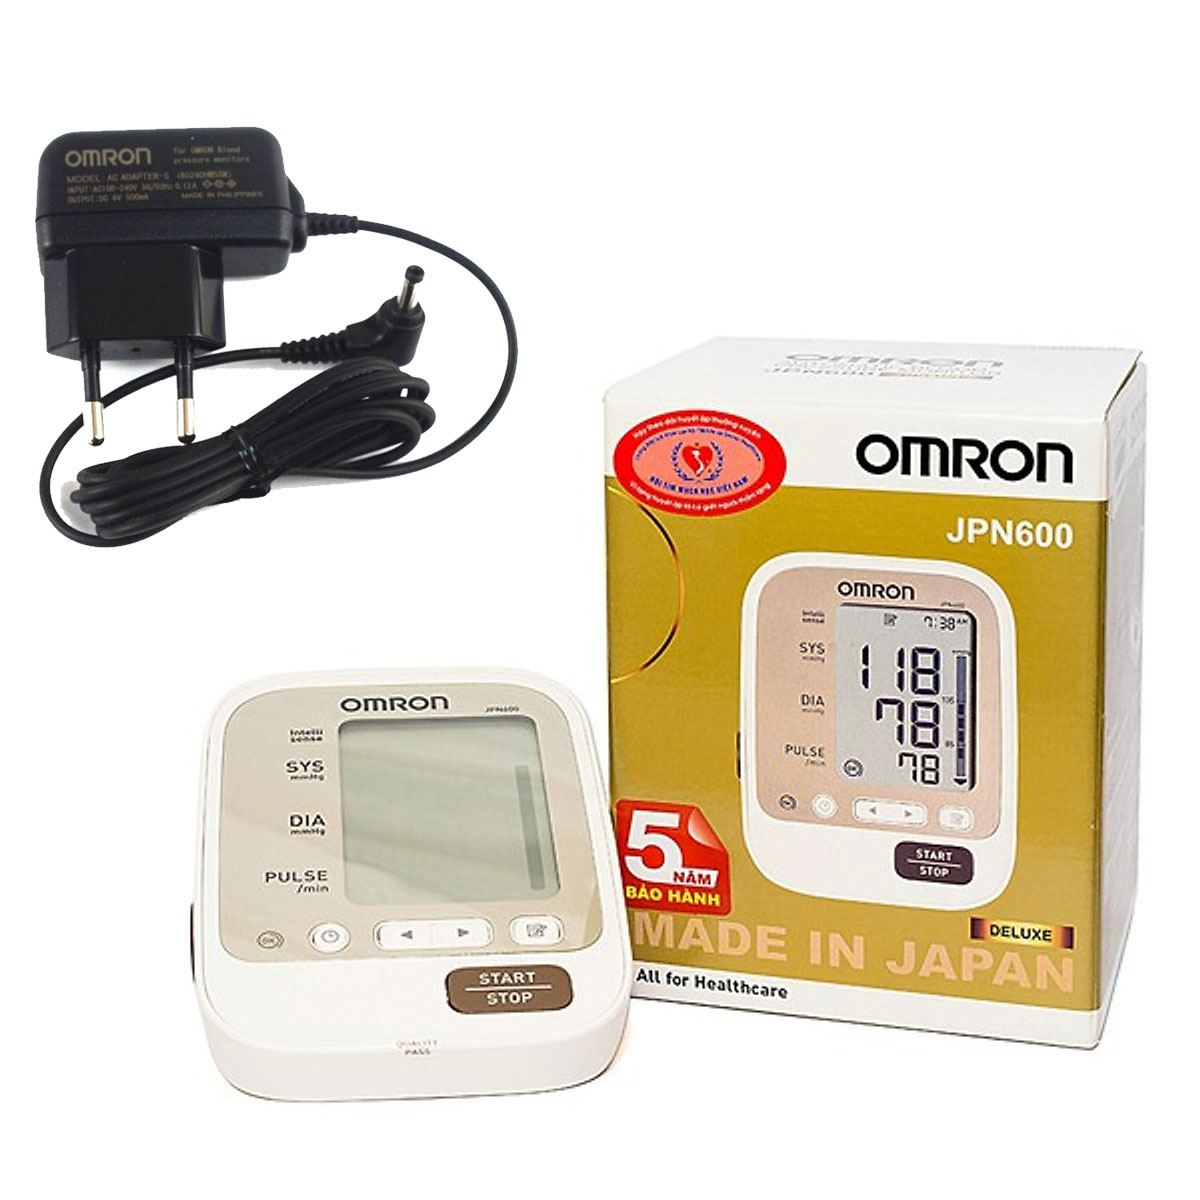 [hcm] máy đo huyết áp omron ( số 1 tại nhật ) dùng cho gia đình máy đo huyết áp mini cao cấp đến từ thương hiệu arm style tặng kèm dây nguồn cốc sạc. bảo hành 5 năm 9